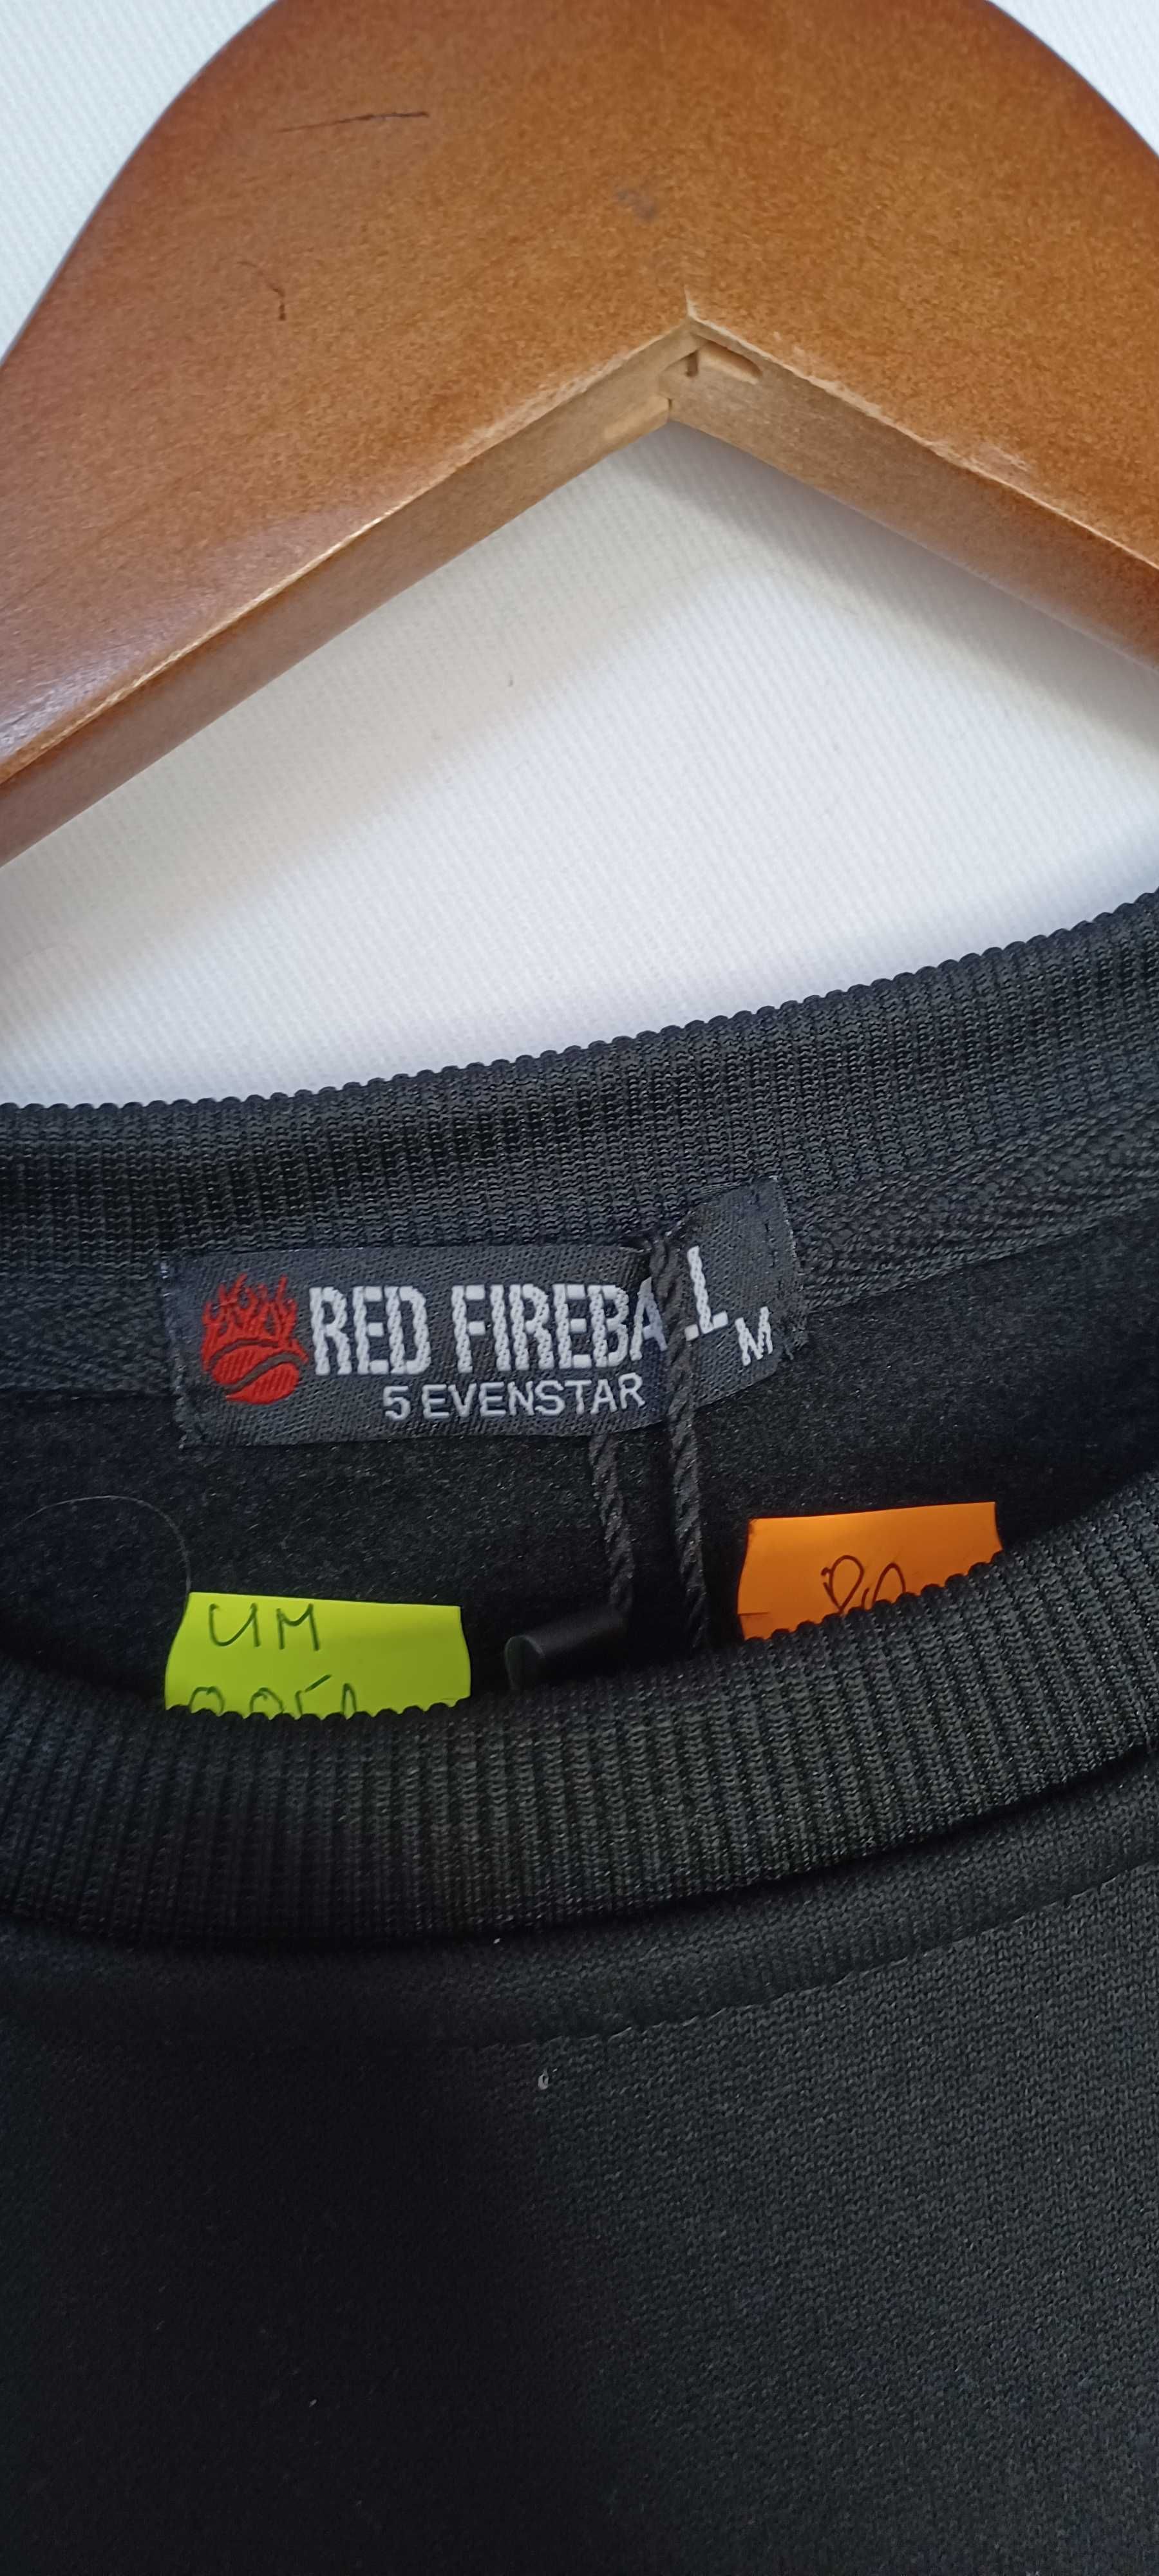 Bluza męska Red Fire Ball//UM_0051